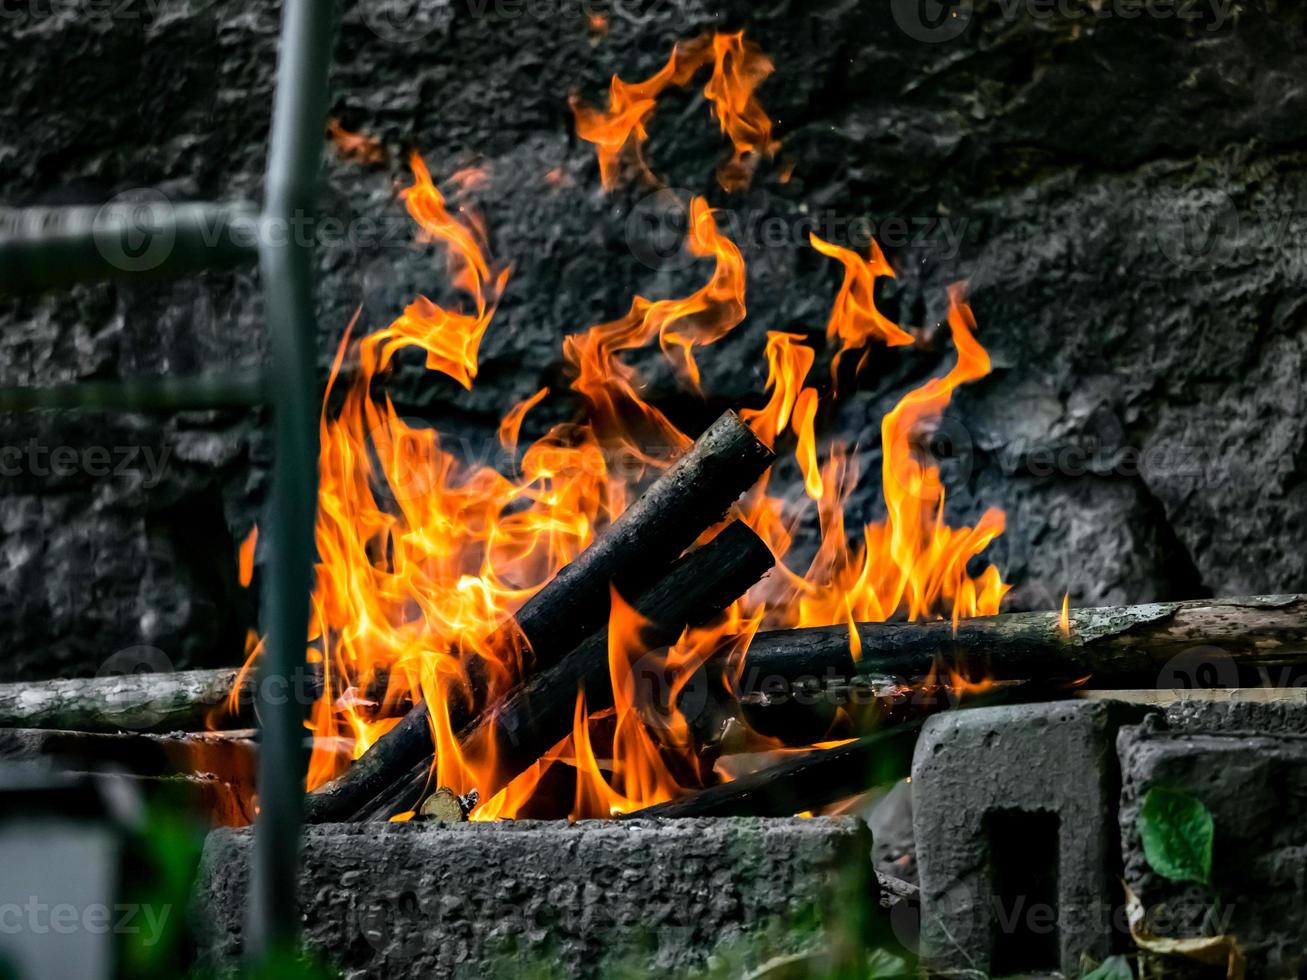 salchichas, pollo y carne se asan a la parrilla en el fuego, barbacoa en el jardín. hermosa llama. foto